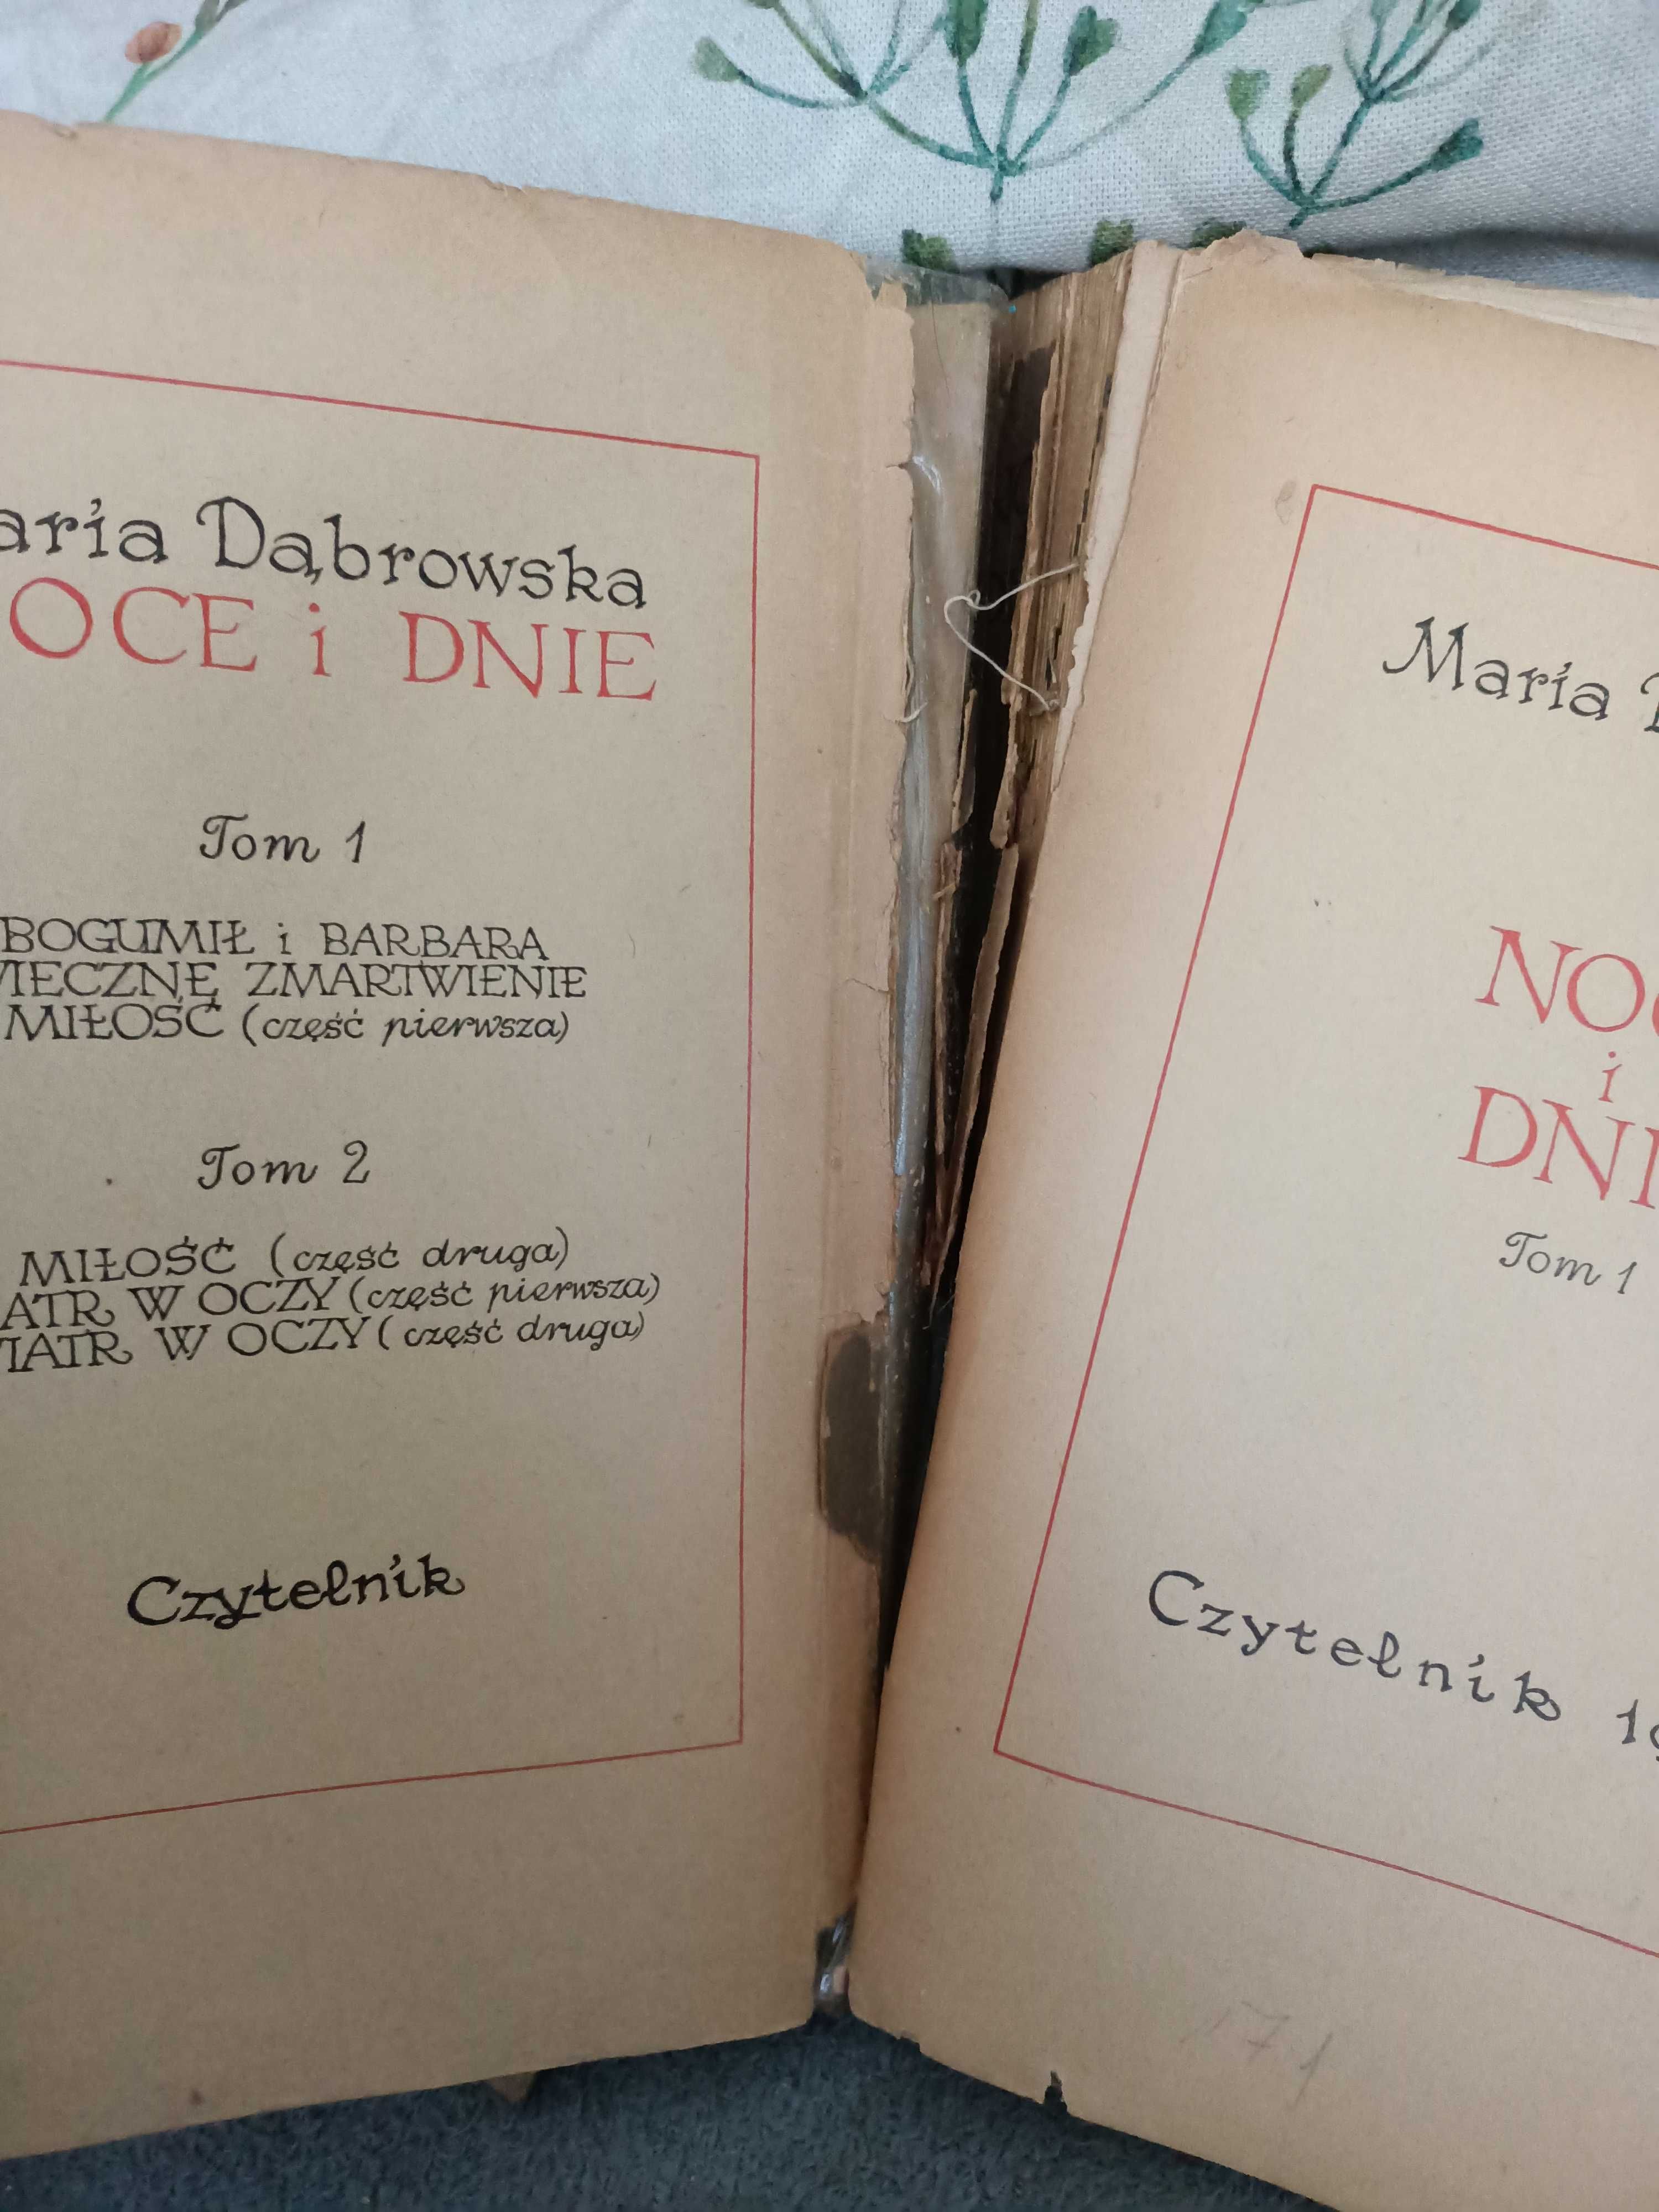 Dąbrowska M. - Noce i dnie. Tom 1 i 2. Czytelnik rok 1953 ~~